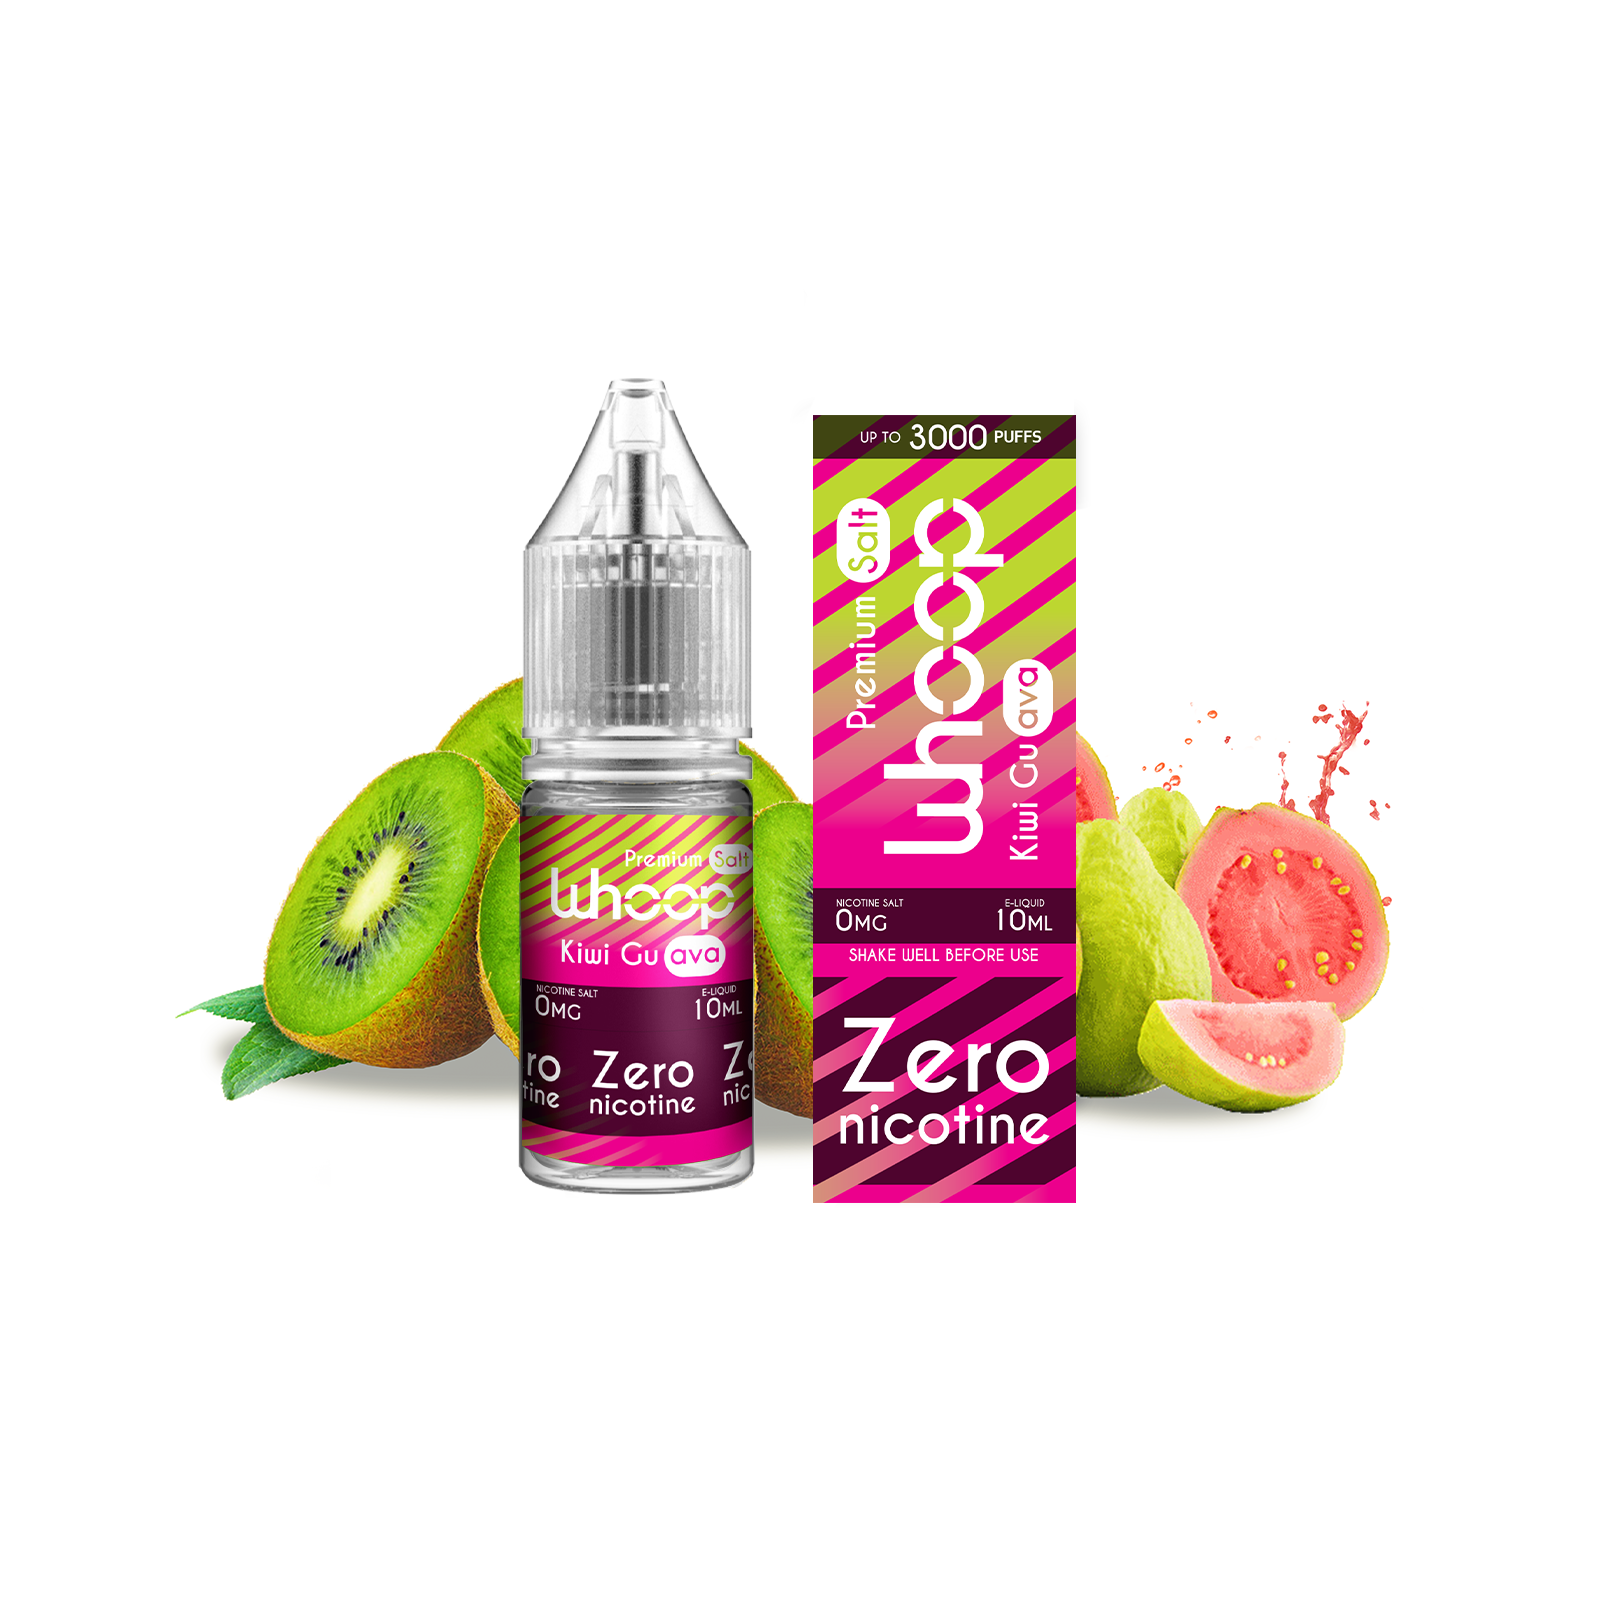 Liquido Kiwi & Guava Zero - Whoop Italia